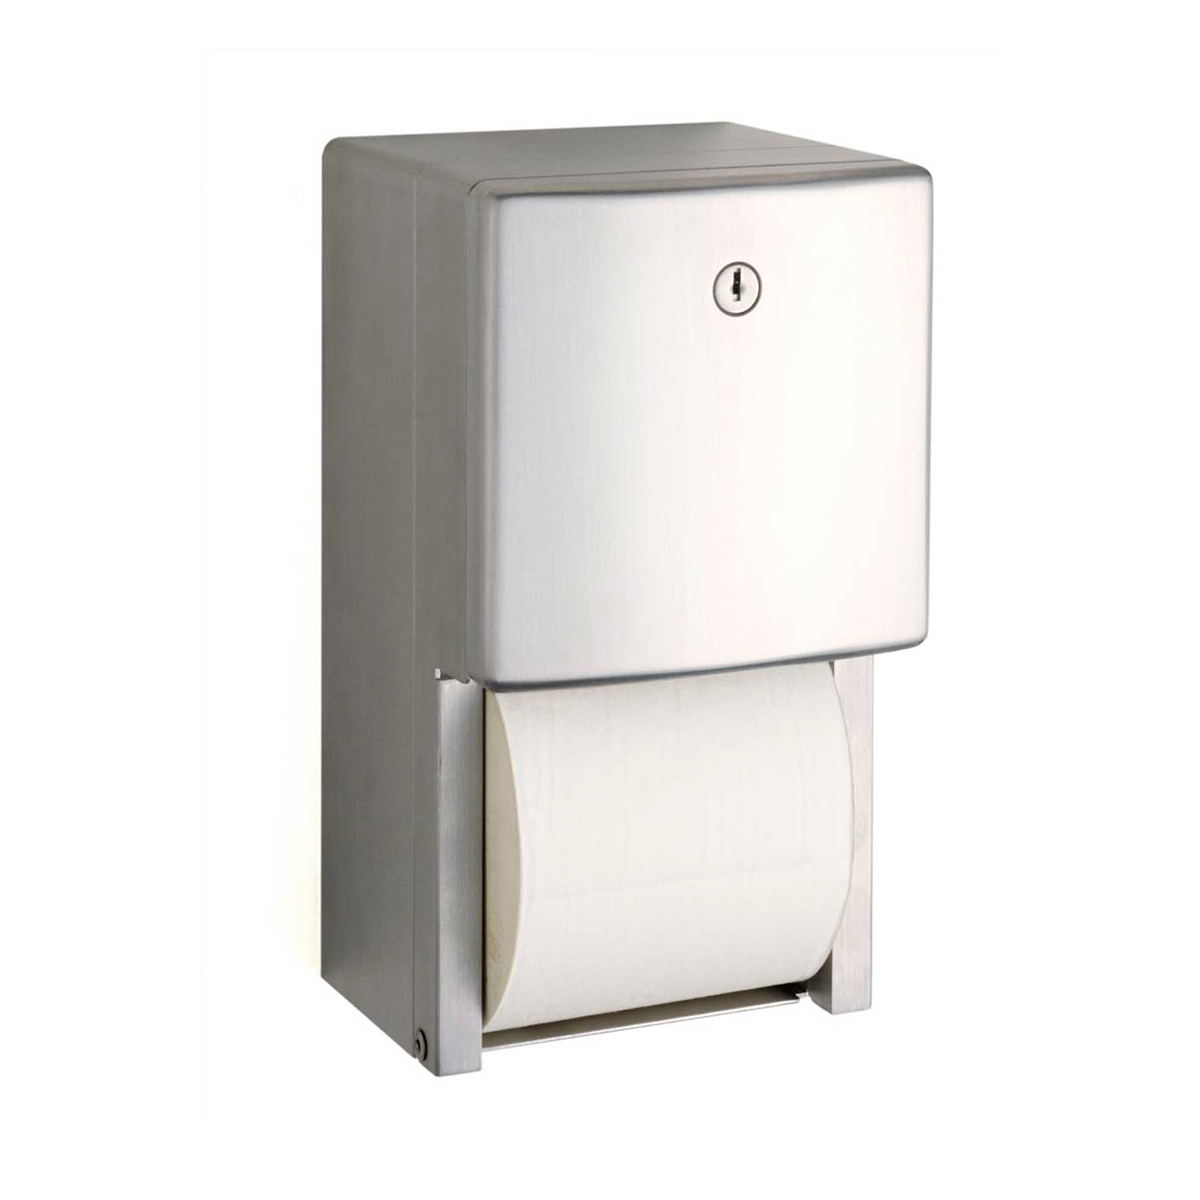 Bobrick B-4288 Multi-Roll Toilet Tissue Dispenser